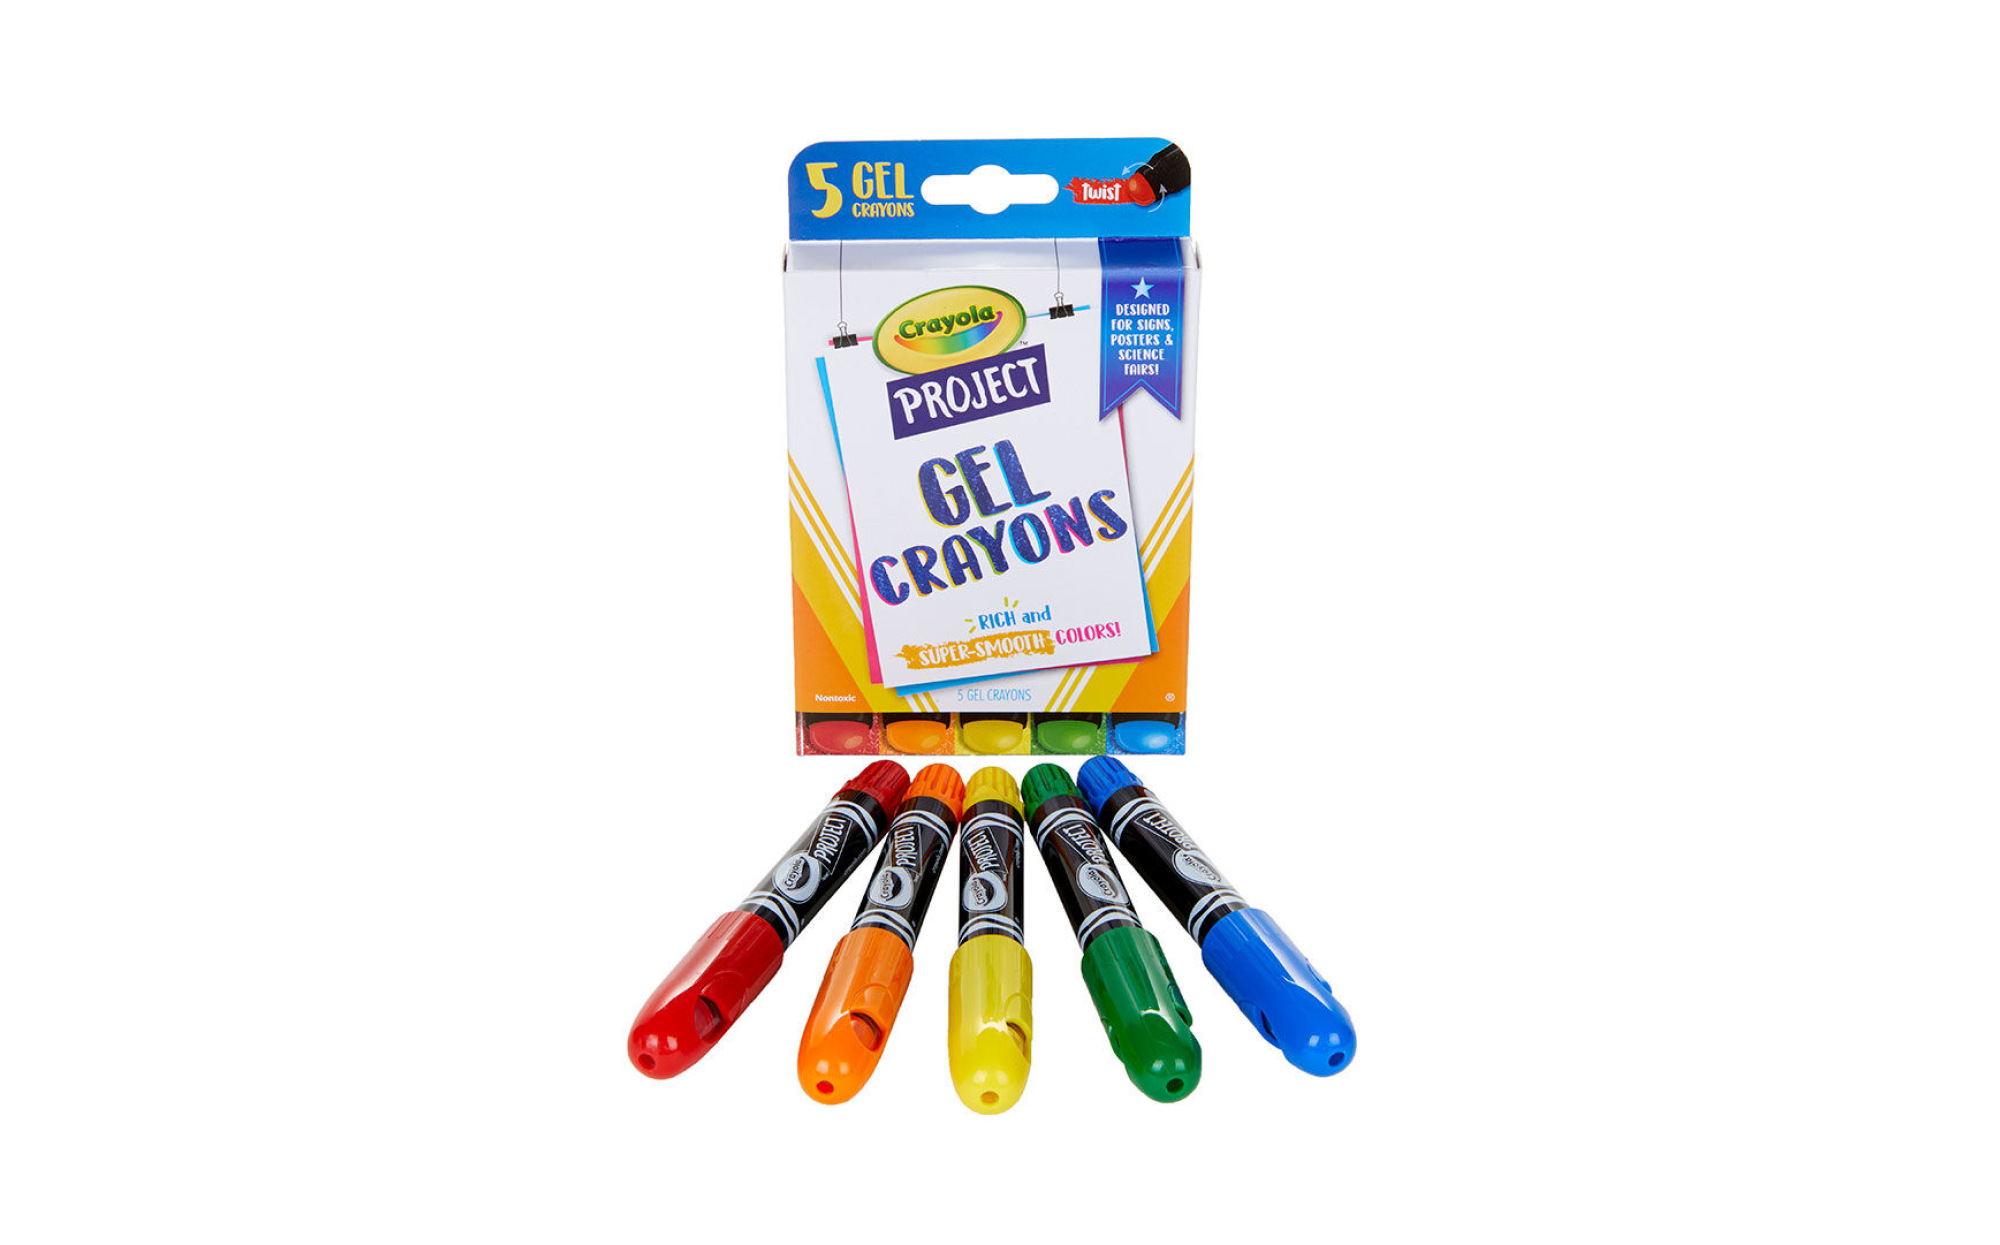 Crayola Gel Crayons – Art Therapy